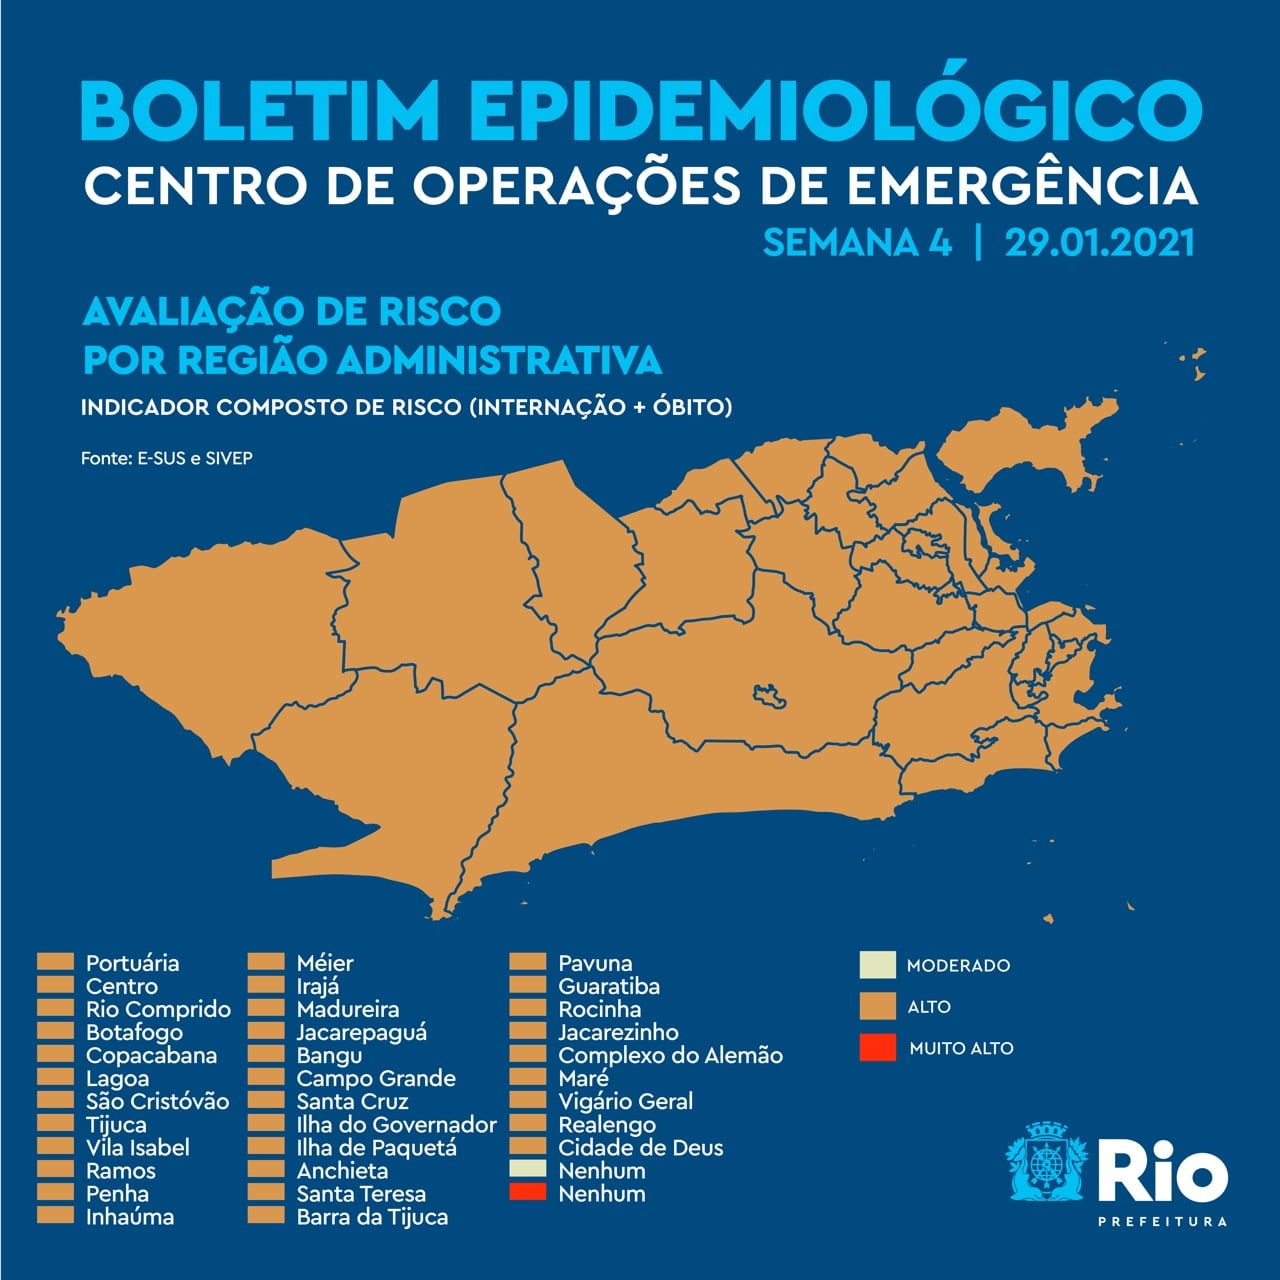  Rio continua com todas regiões administrativas com alto risco de contágio para covid-19